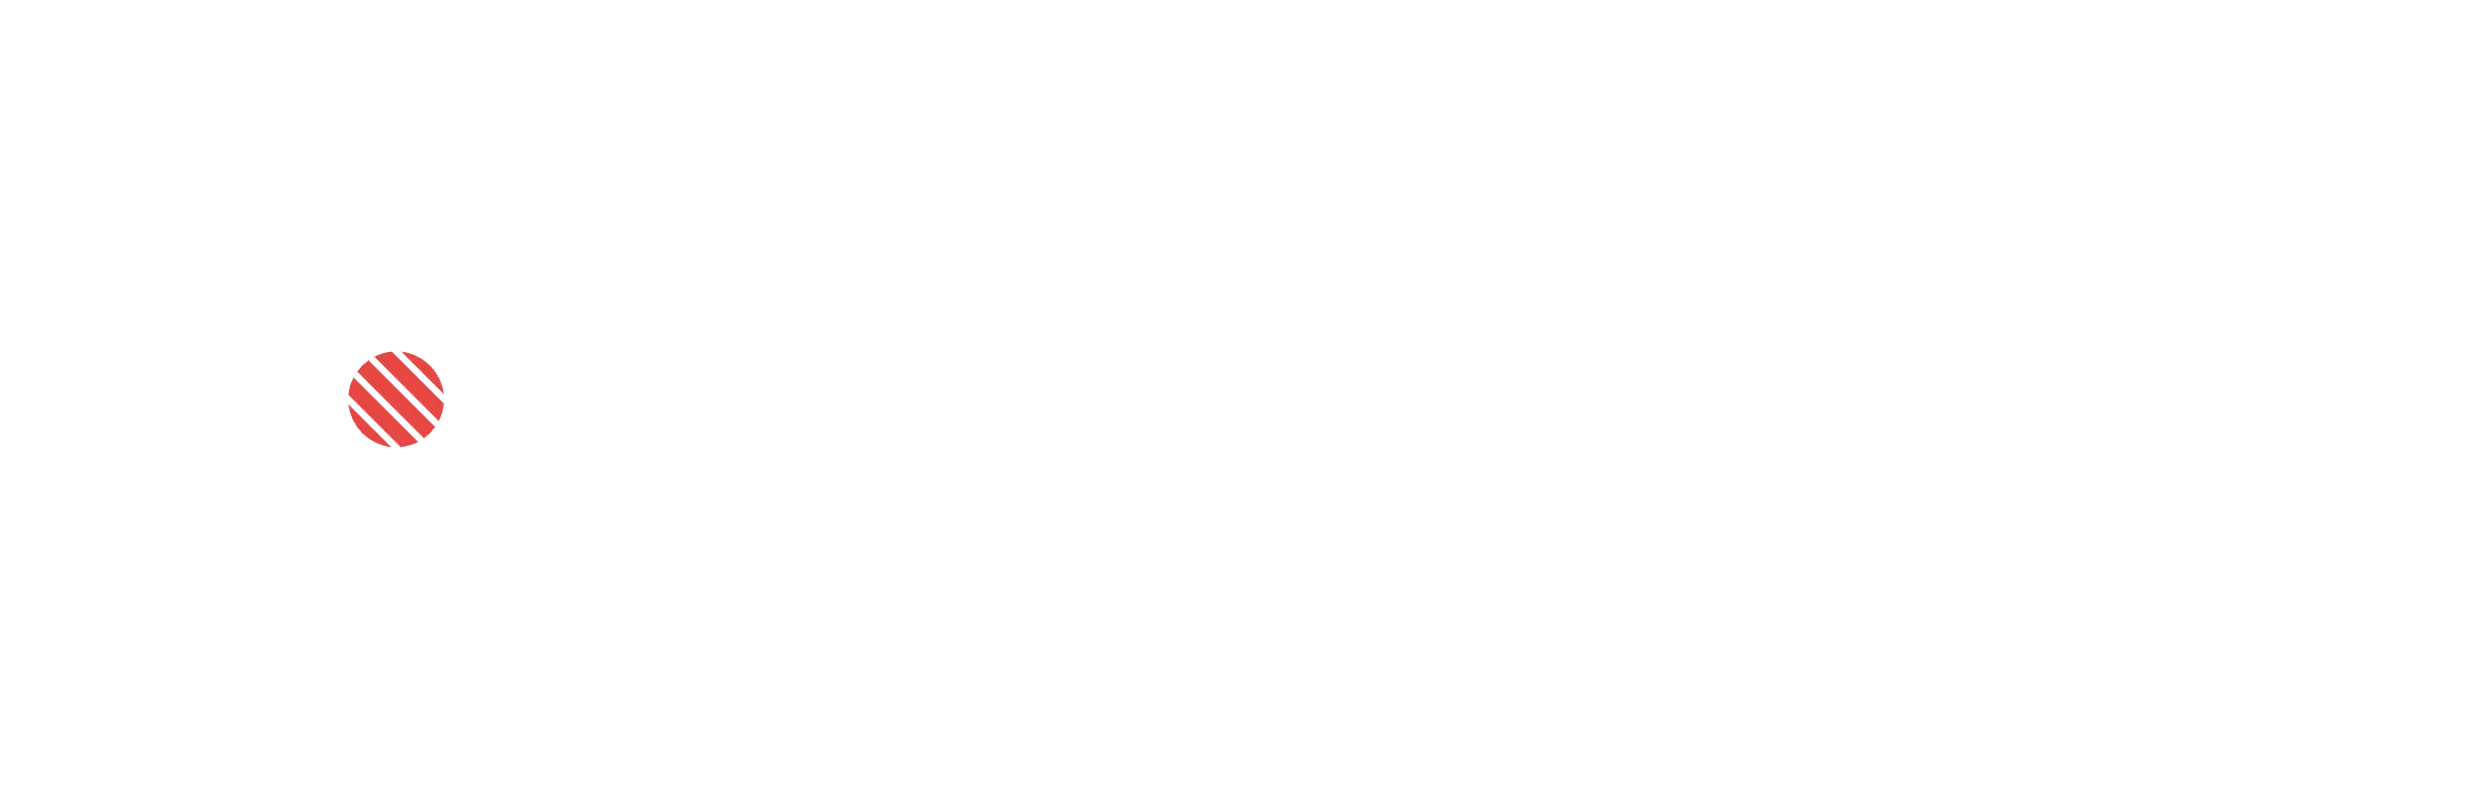 Sushi Mania Promo-Codes 